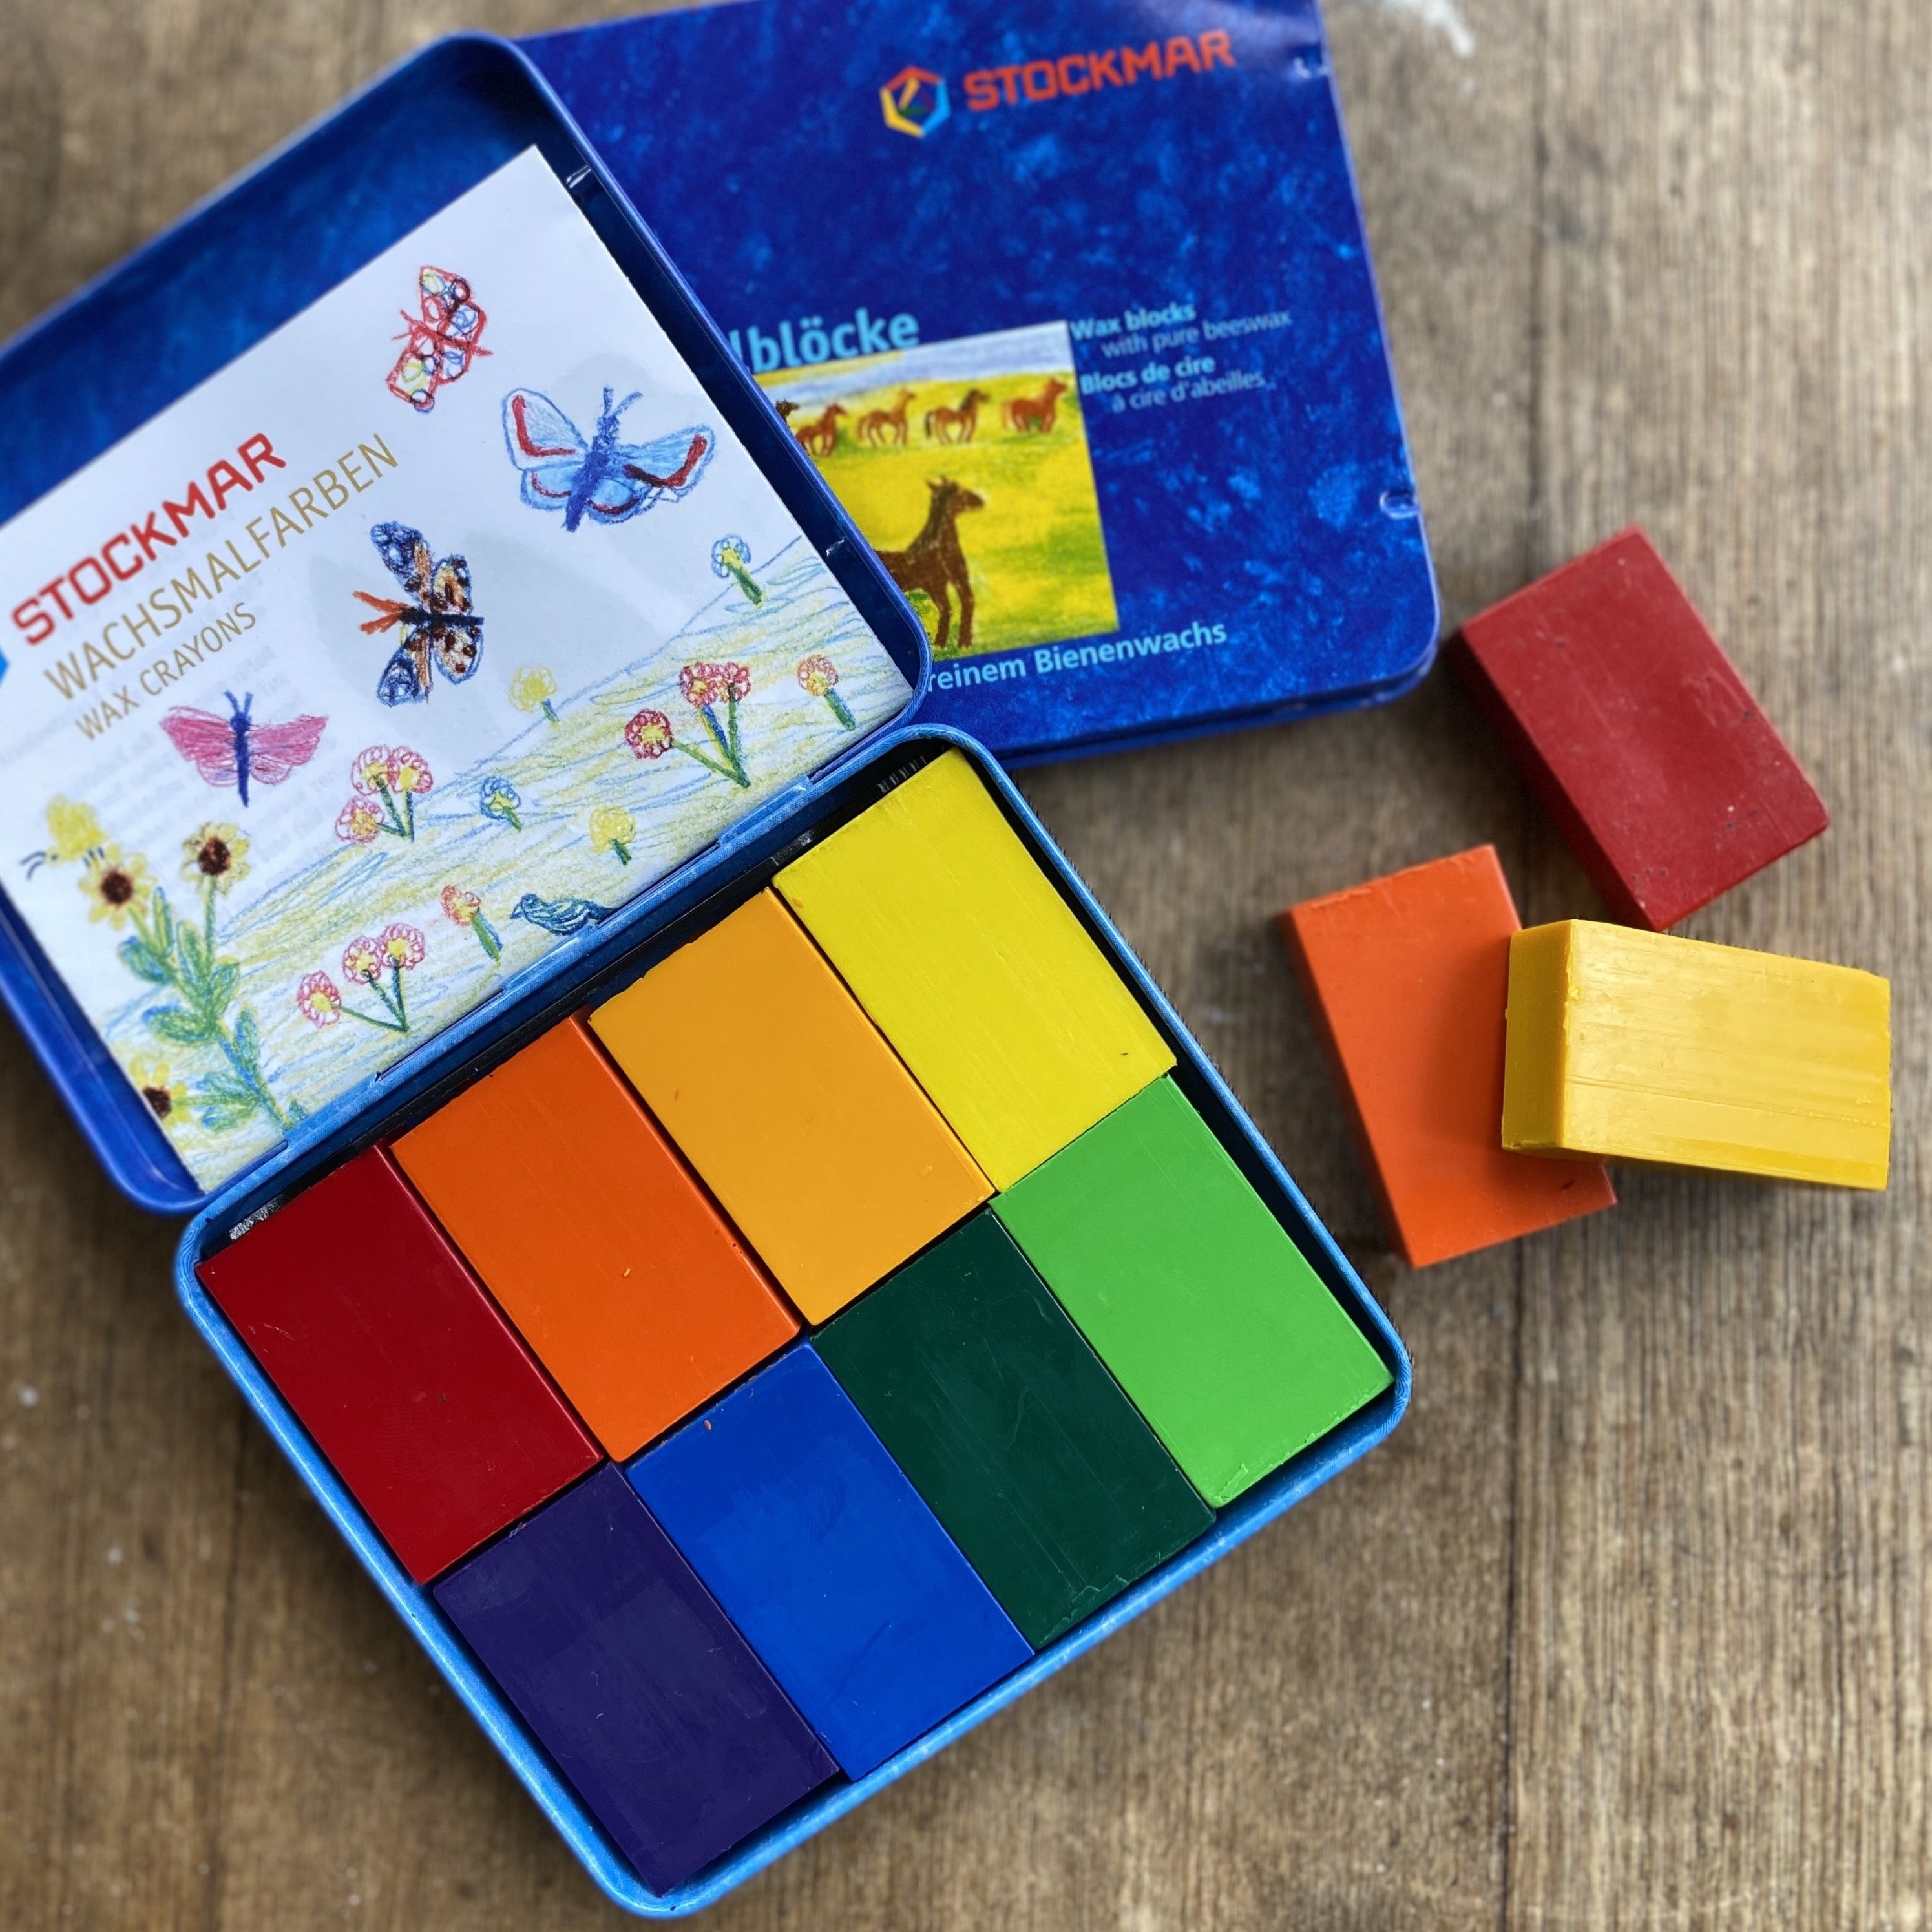 Stockmar Beeswax Block Crayons in Tin Waldorf Colour Mix (Set of 8)